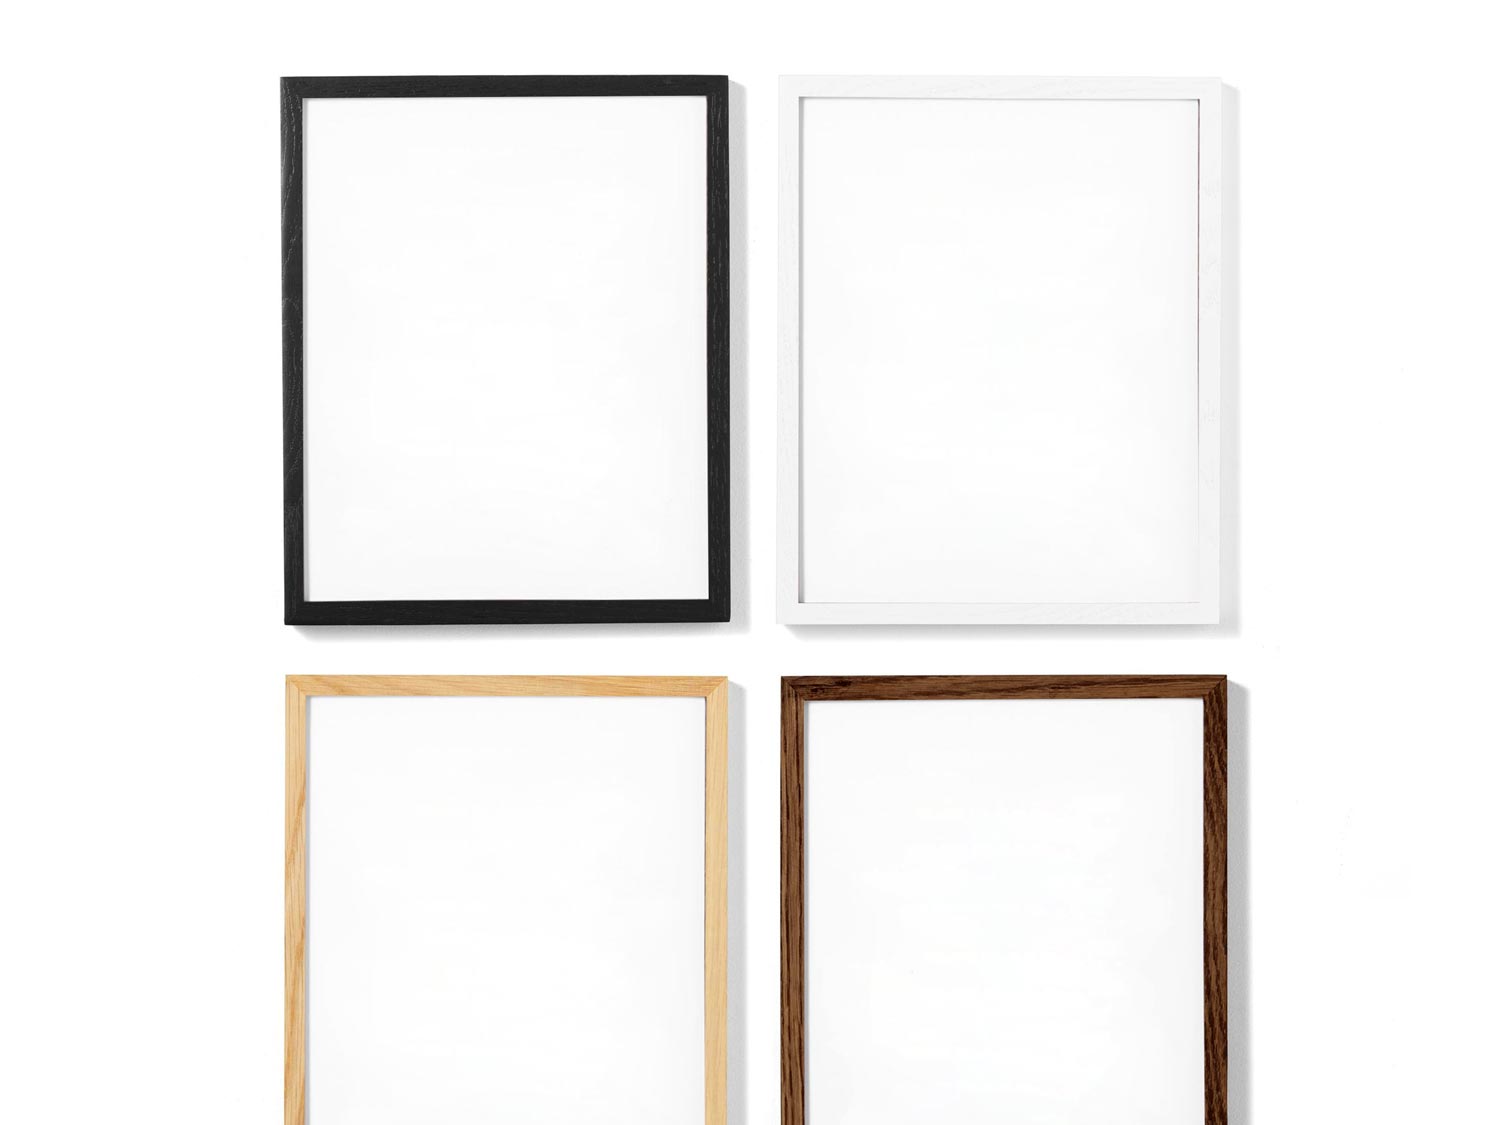 Quatre cadres photo bois fabriqués aves des baguettes 20x20 mm de bois noir, de bois blanc, de bois clair et de bois foncé sont exposés côte à côte